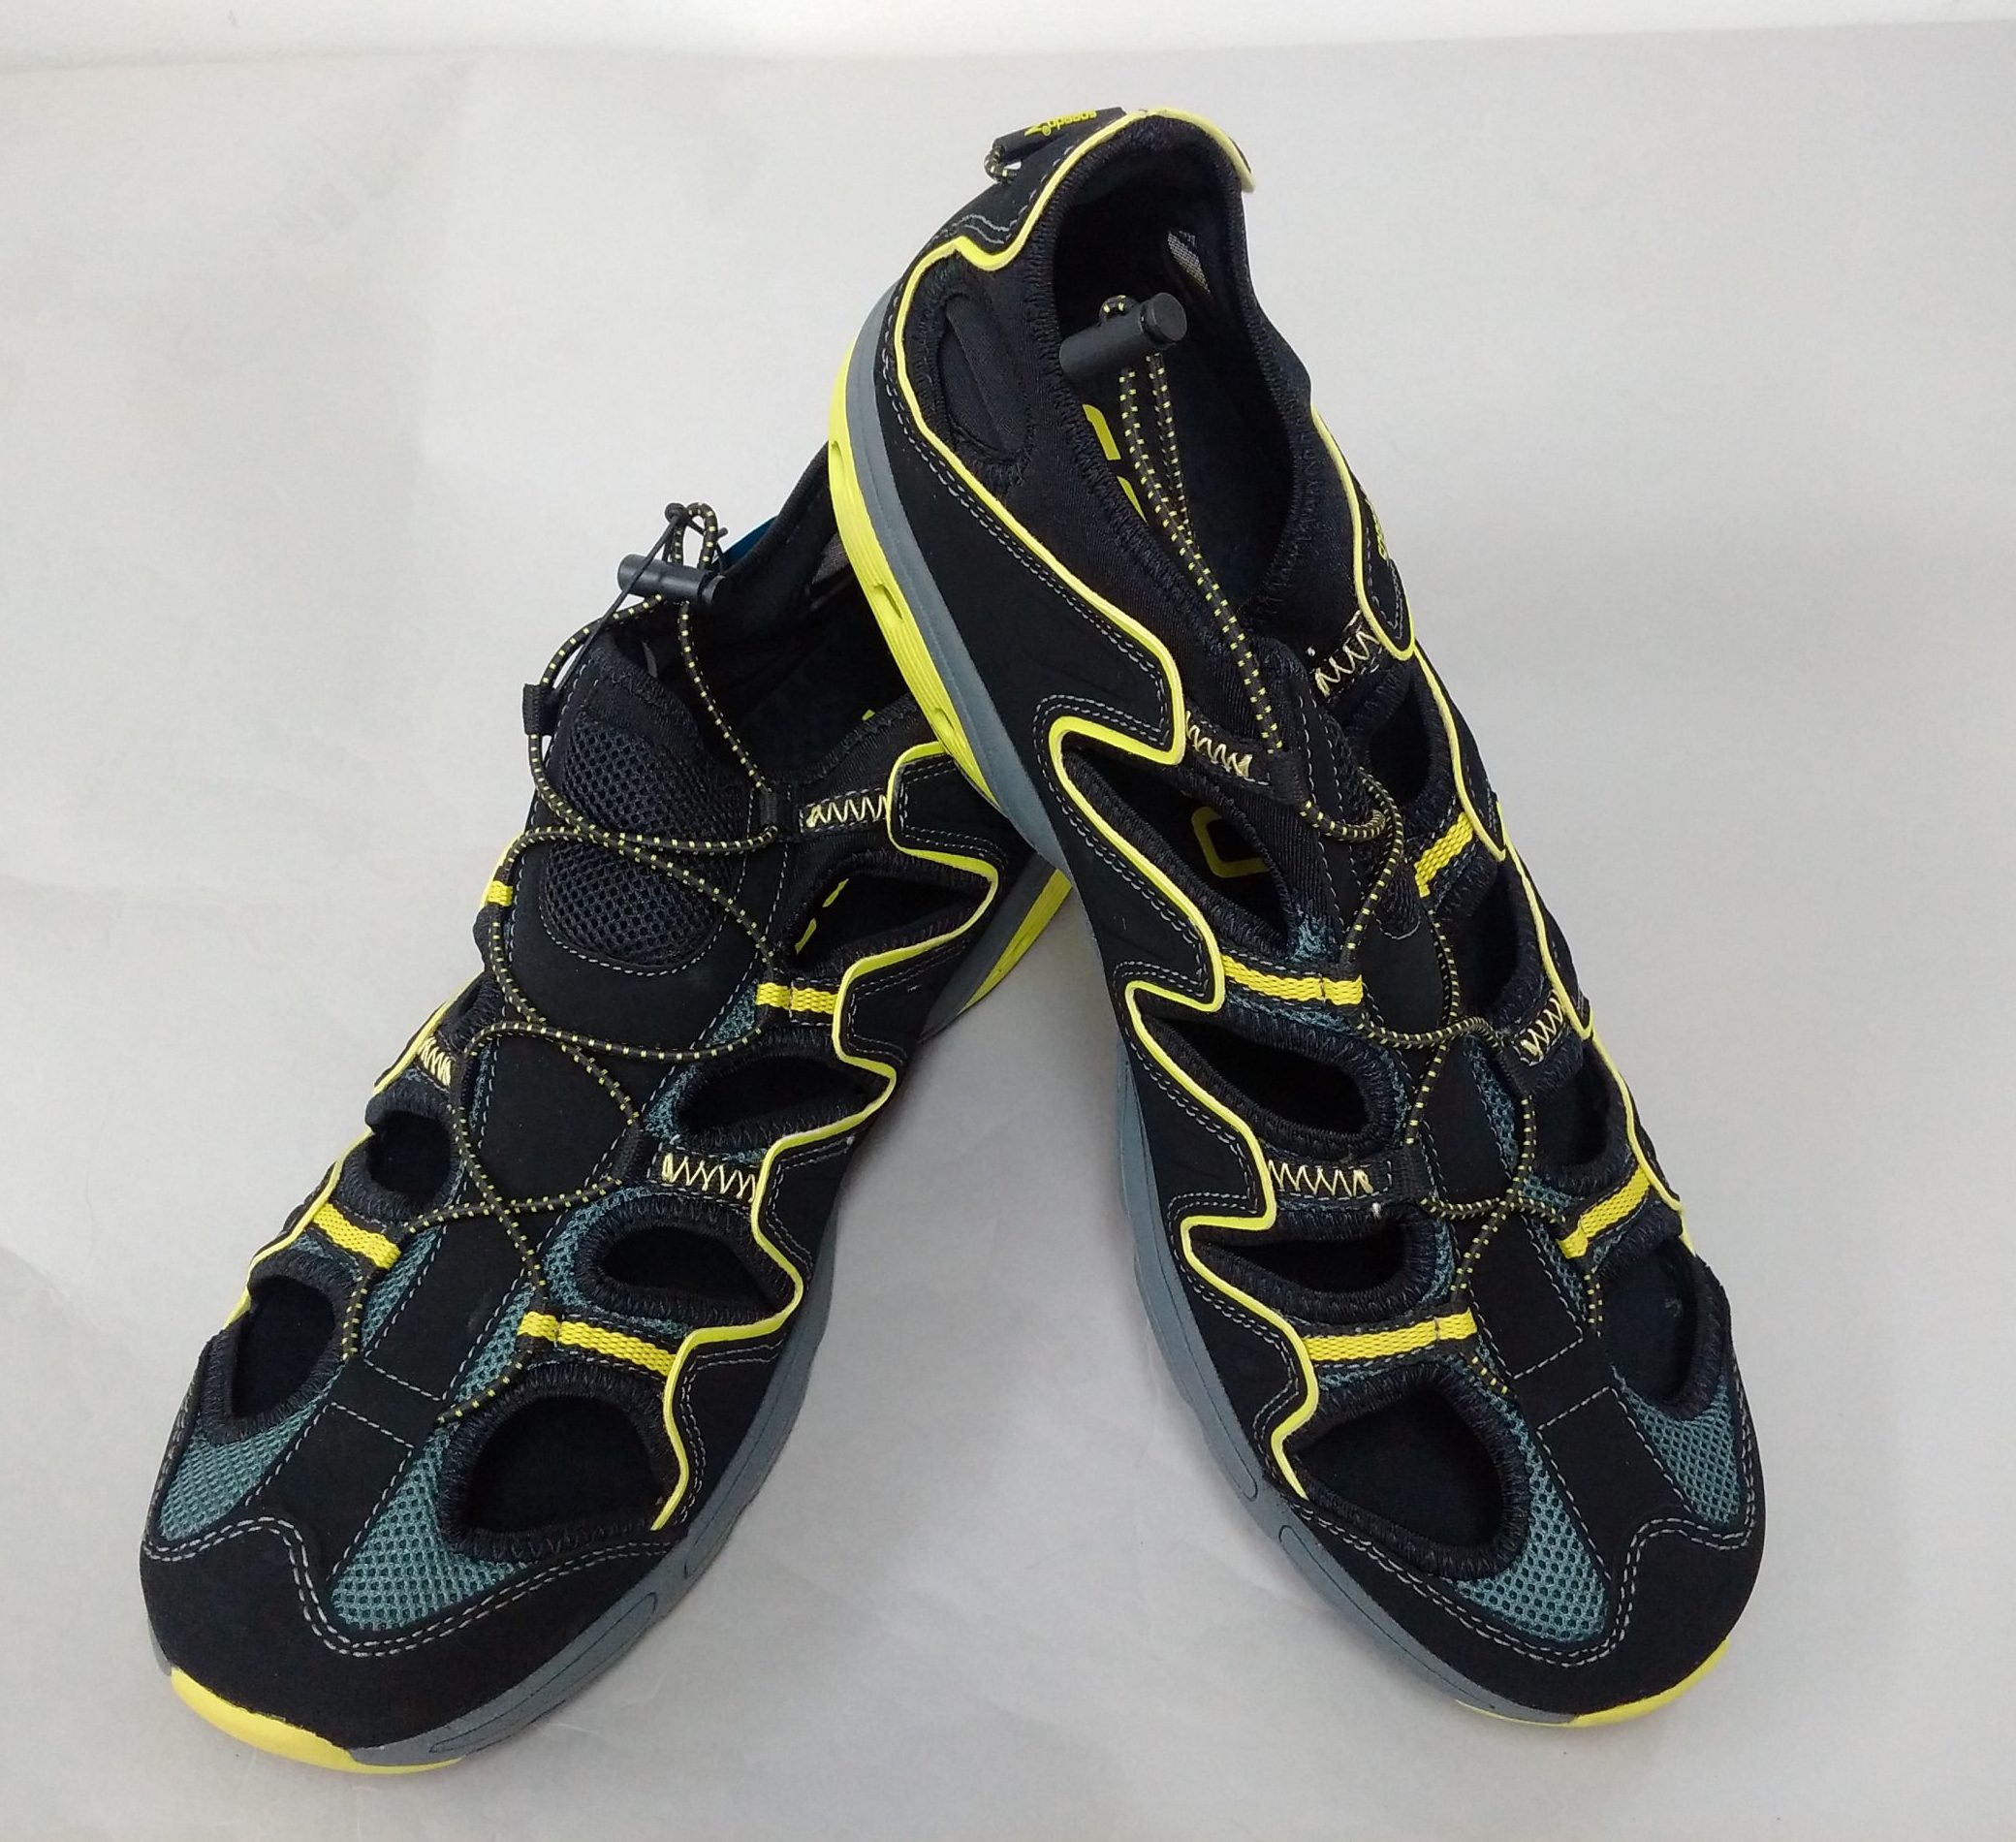 Speedo Men's Hydro Comfort Shoe Size 13 